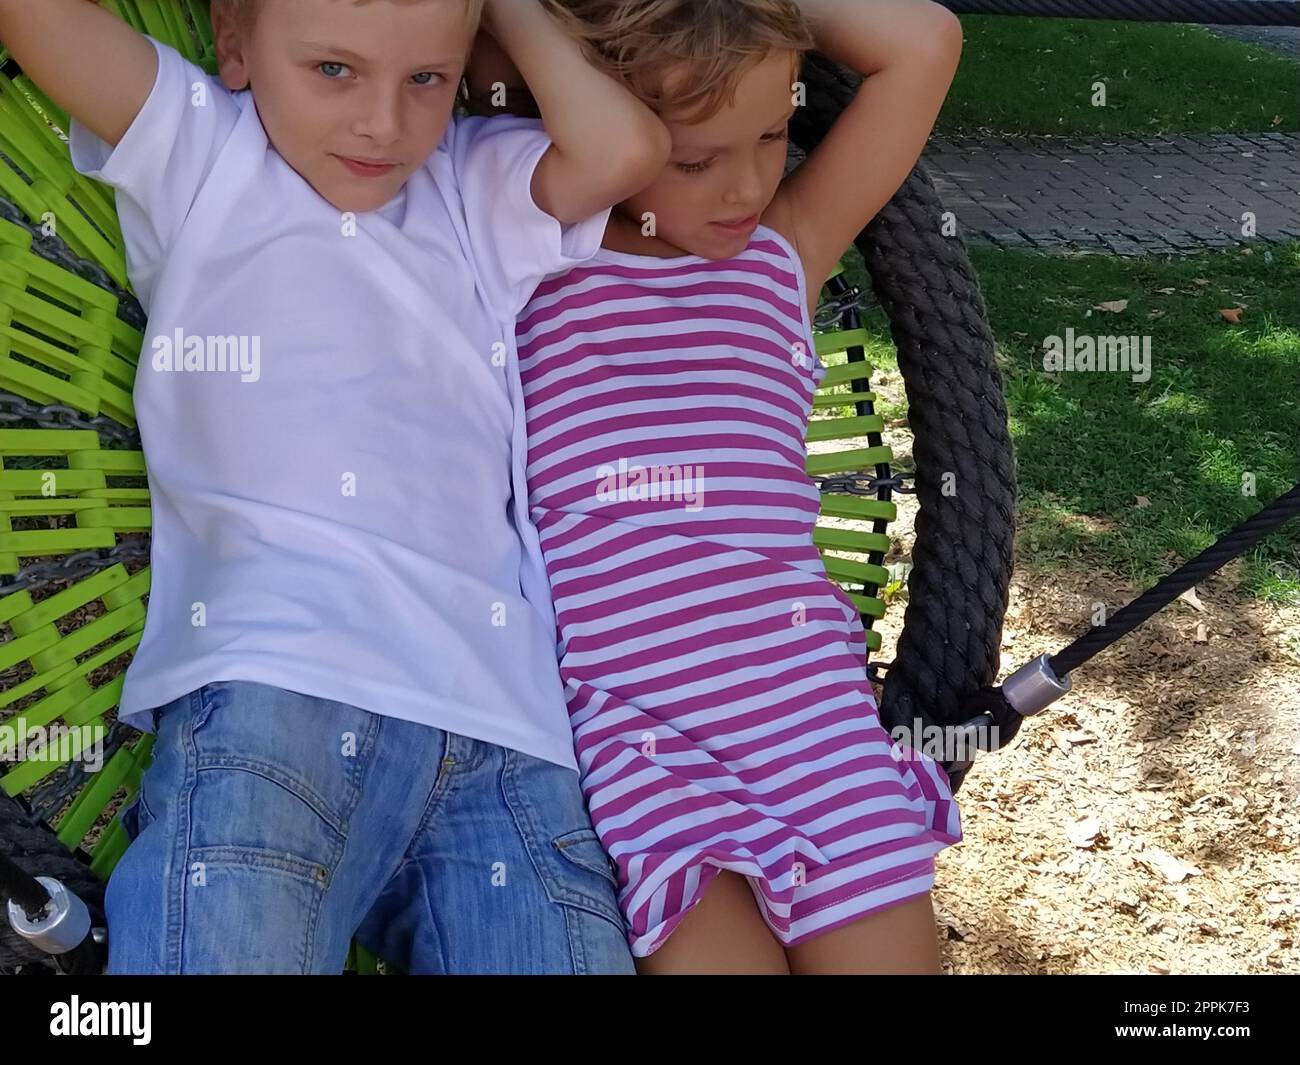 Les enfants se balancent sur une balançoire en toile d'araignée. Garçon et fille, frère et sœur en été sur le terrain de jeu. Balancement de la balançoire. Garçon 8 ans dans un T-shirt blanc. Fille de 6 ans dans une robe rose rayée Banque D'Images